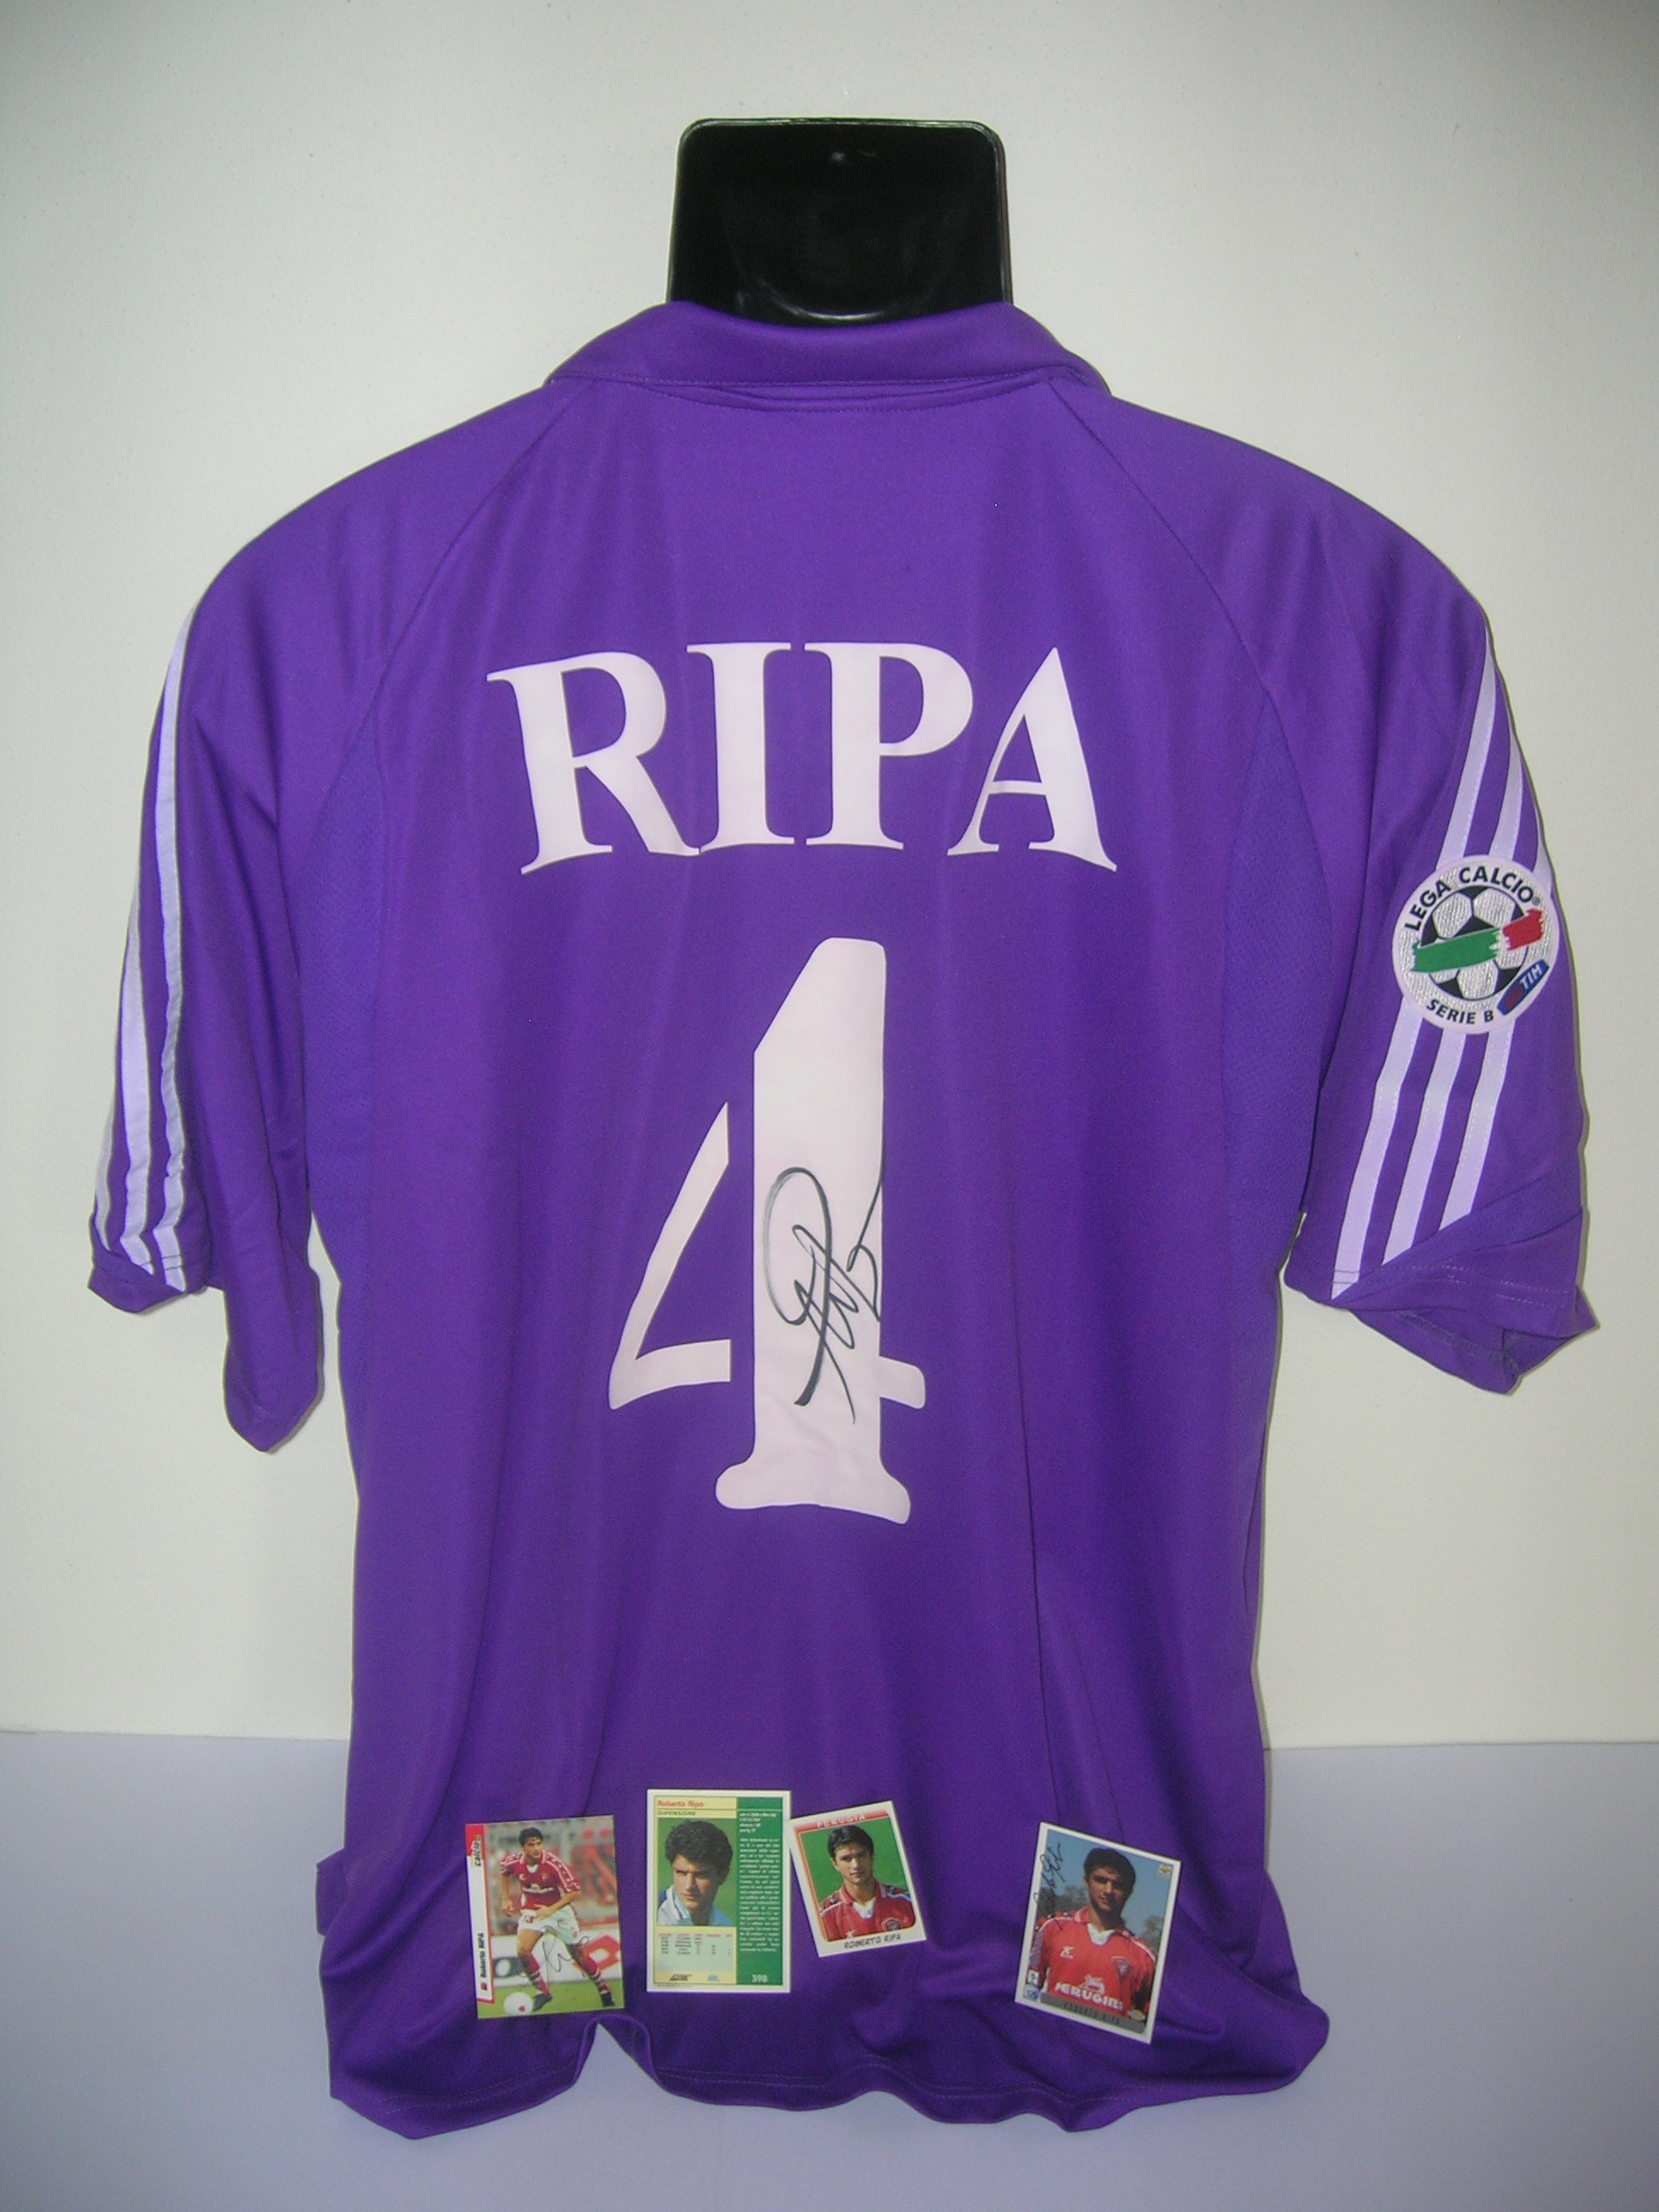 Fiorentina  Ripa  4-B